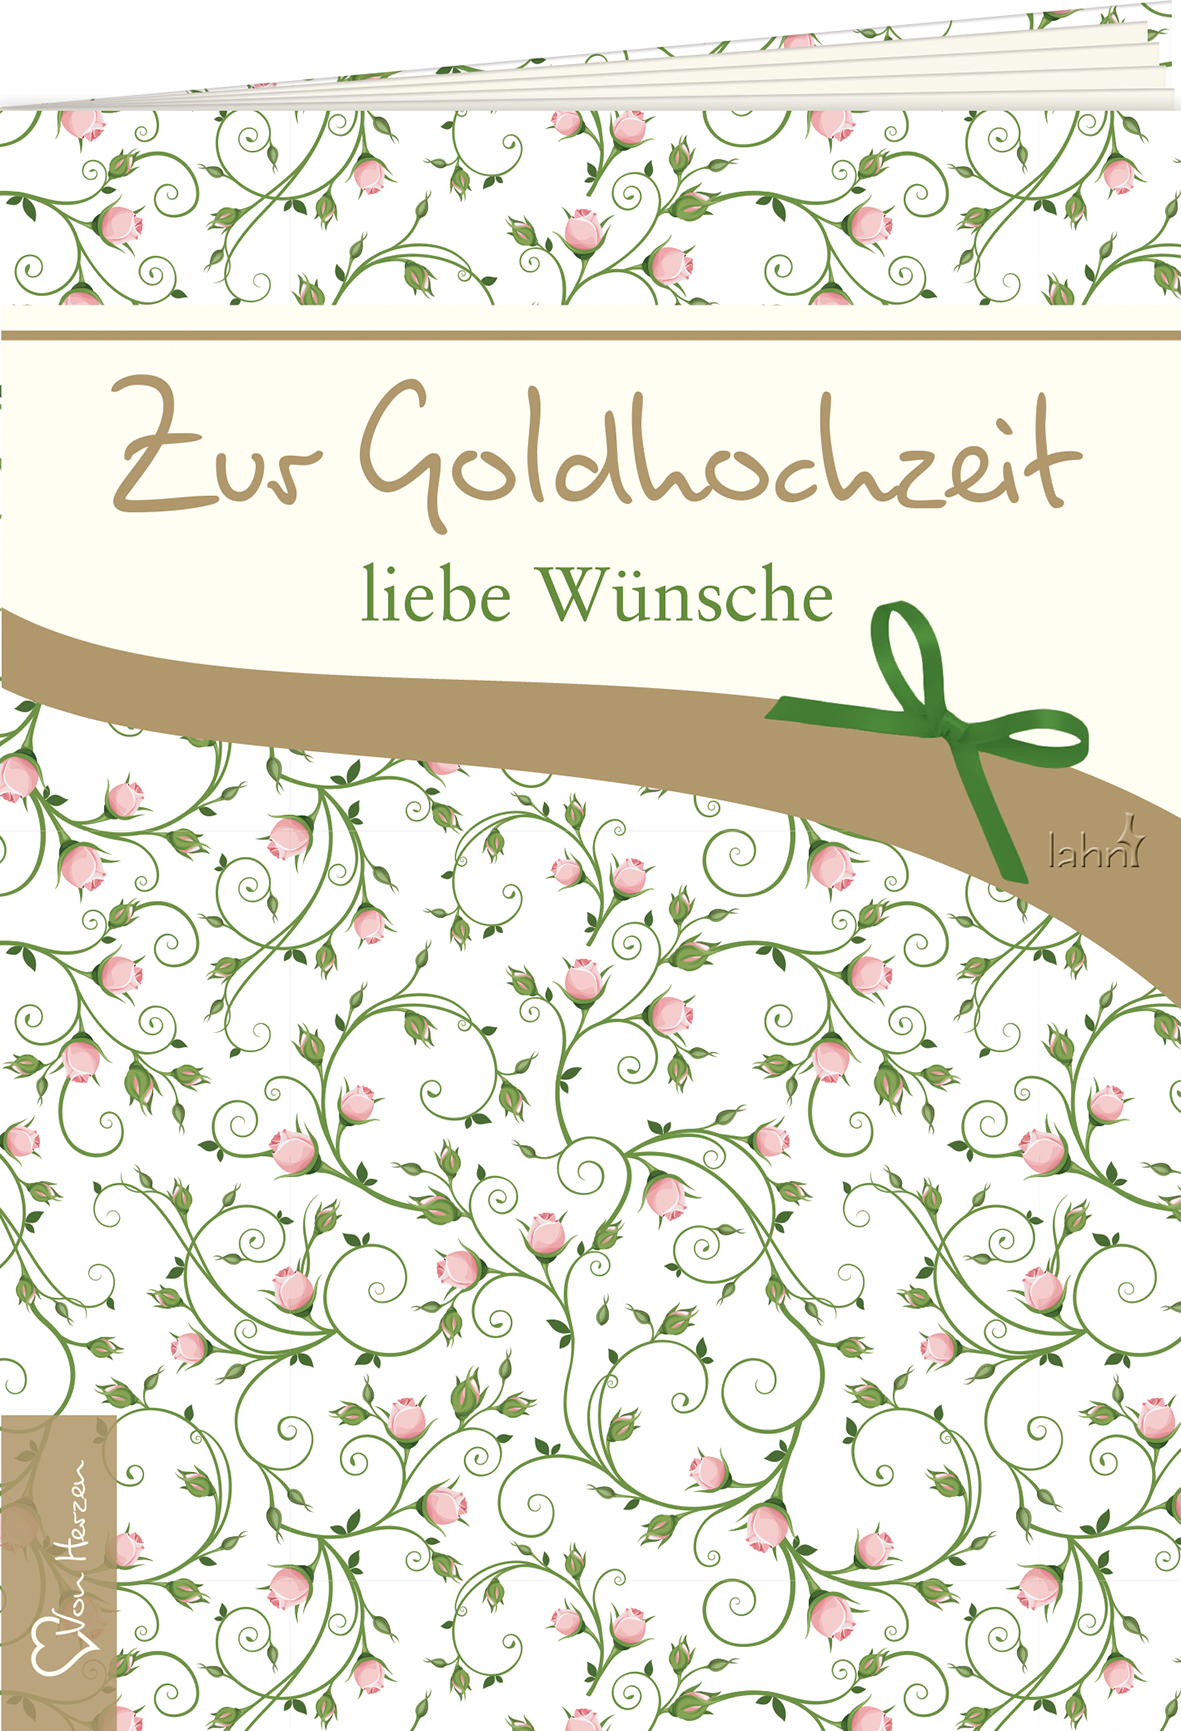 Zur Goldhochzeit liebe Wünsche - Cover